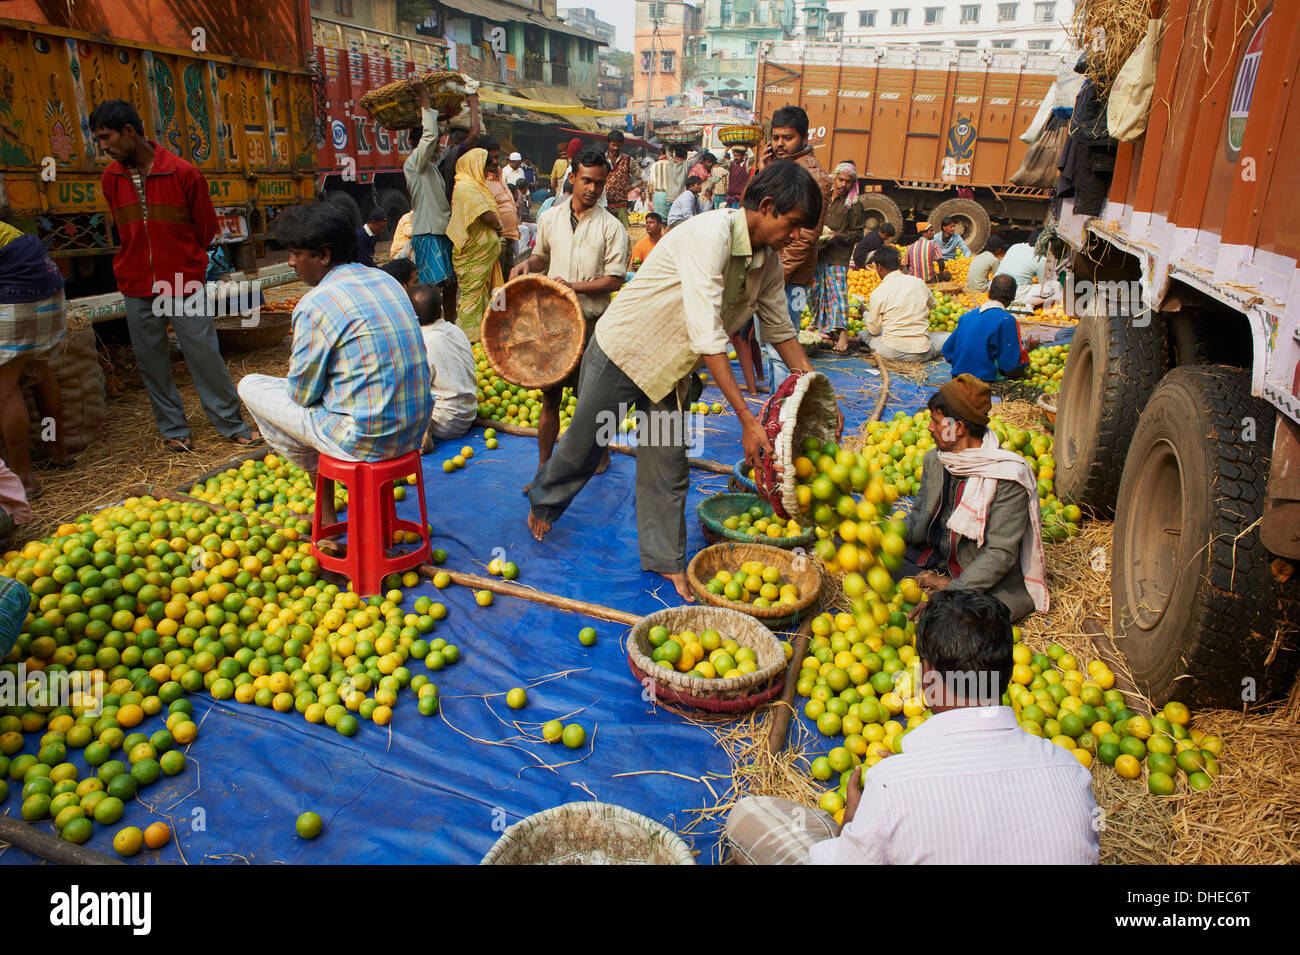 Fruit market, Kolkata (Calcutta), West Bengal, India, Asia Stock Photo